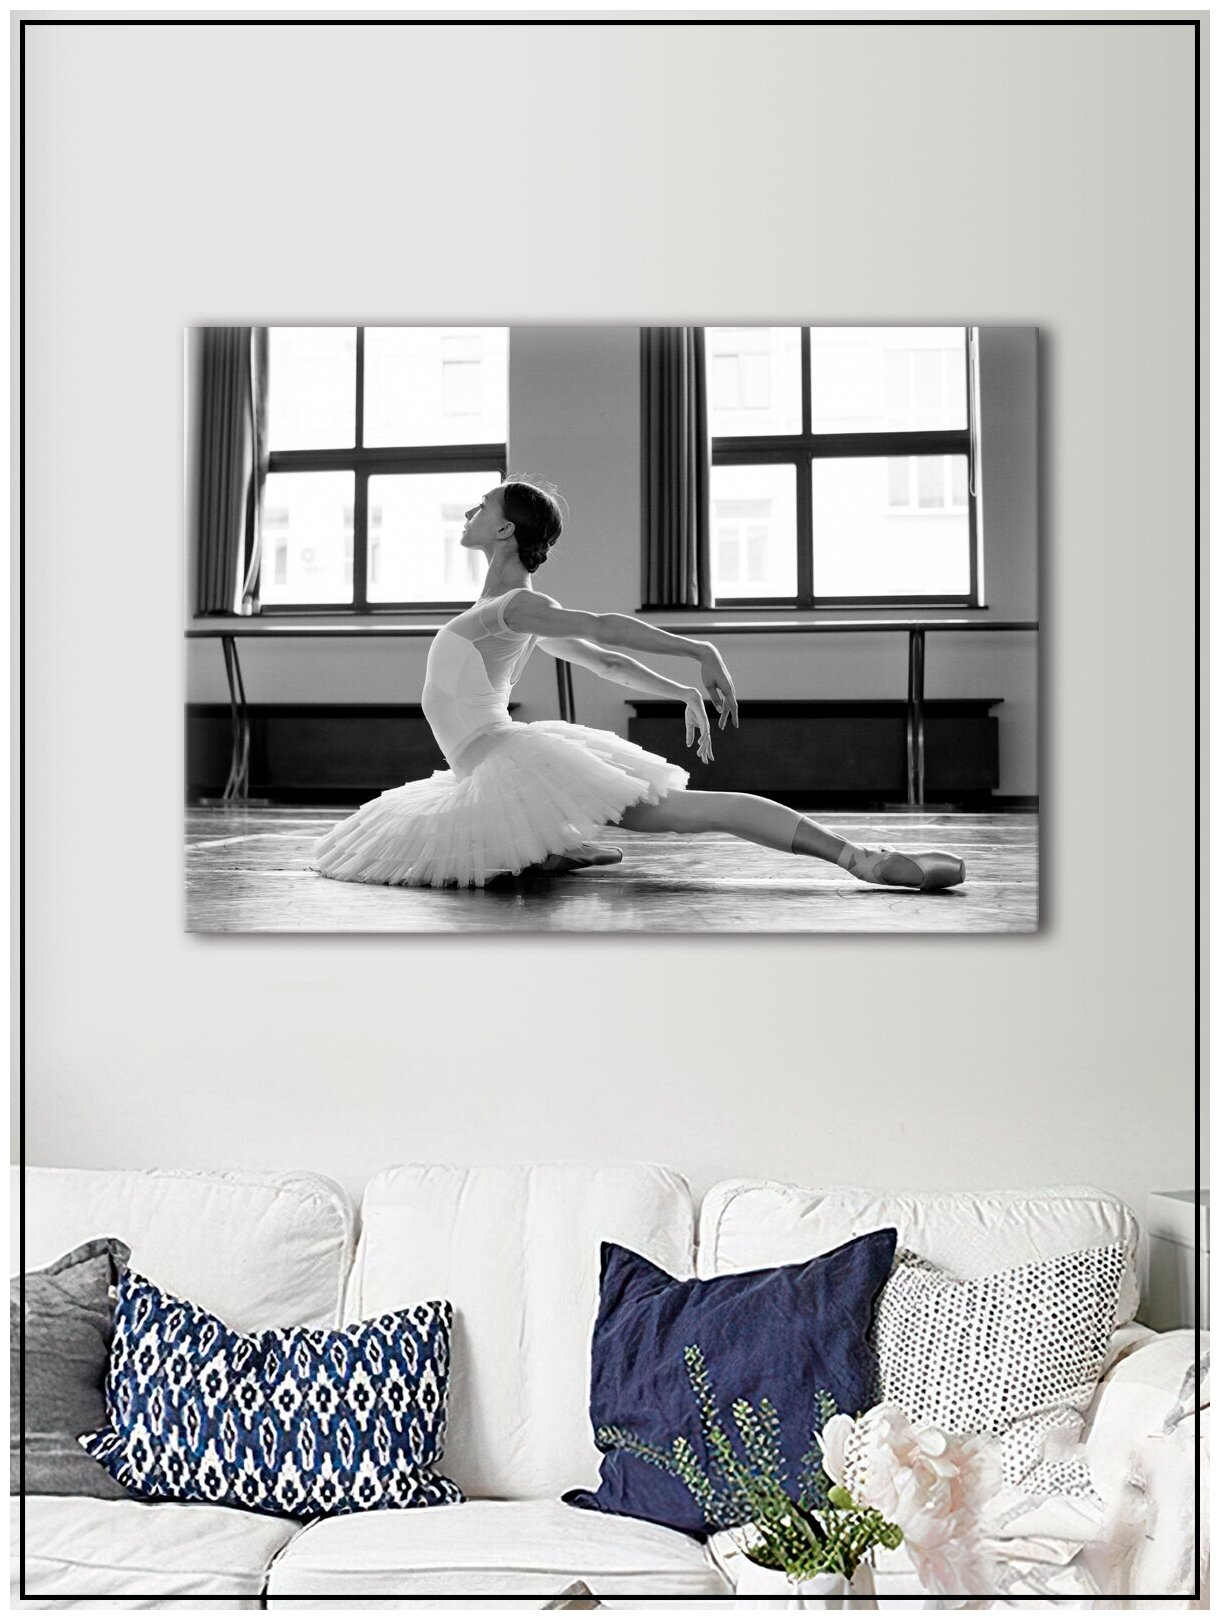 Картина для интерьера на натуральном хлопковом холсте "Девушка балерина", 30*40см, холст на подрамнике, картина в подарок для дома